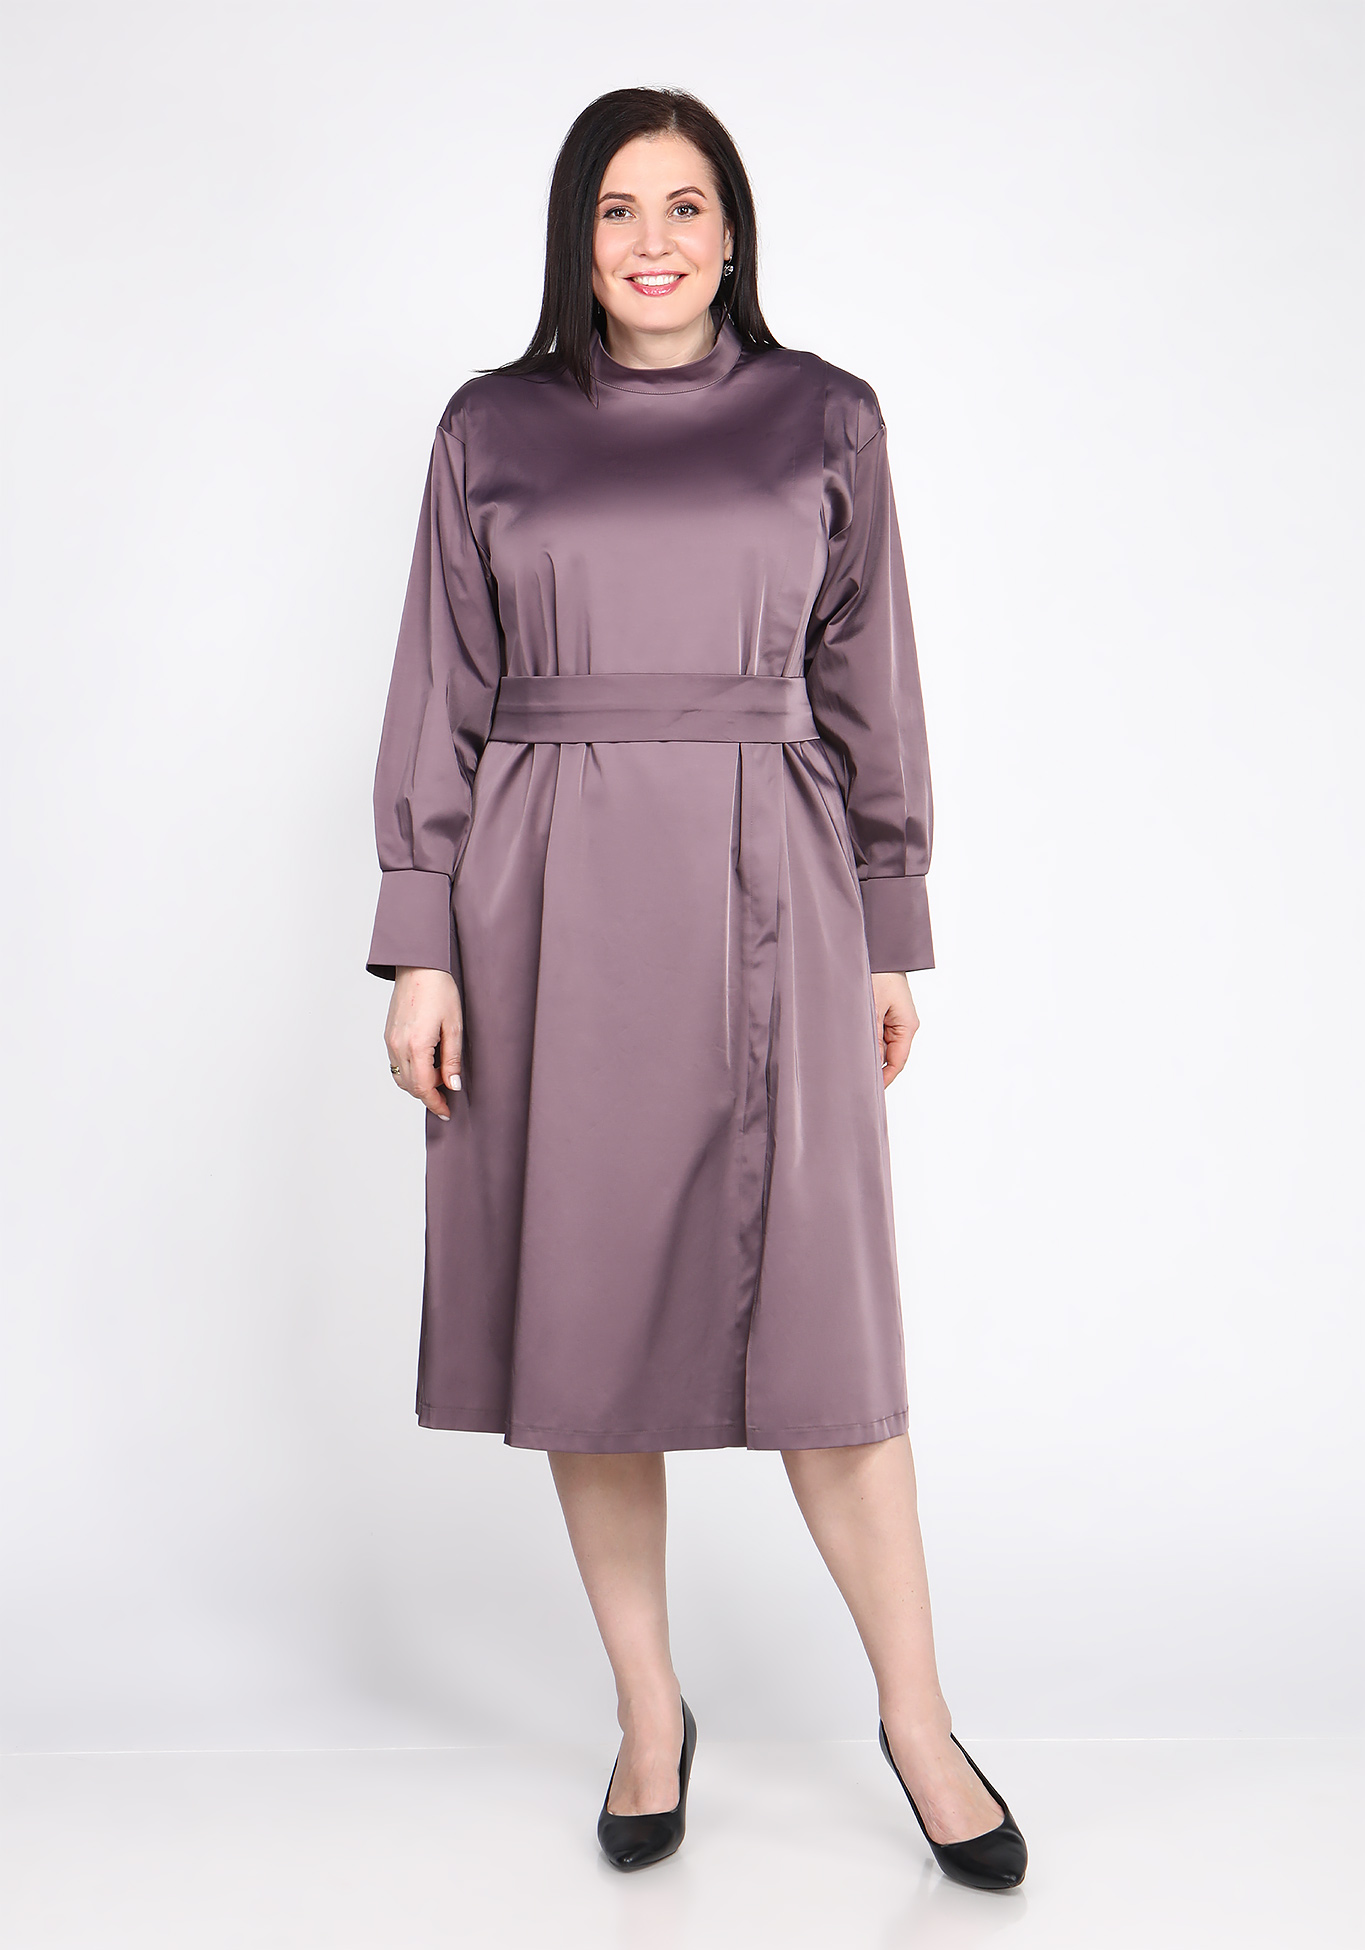 Платье с поясом на пуговицах Sarah Morenberg, размер 48, цвет тёмно-лиловый - фото 1